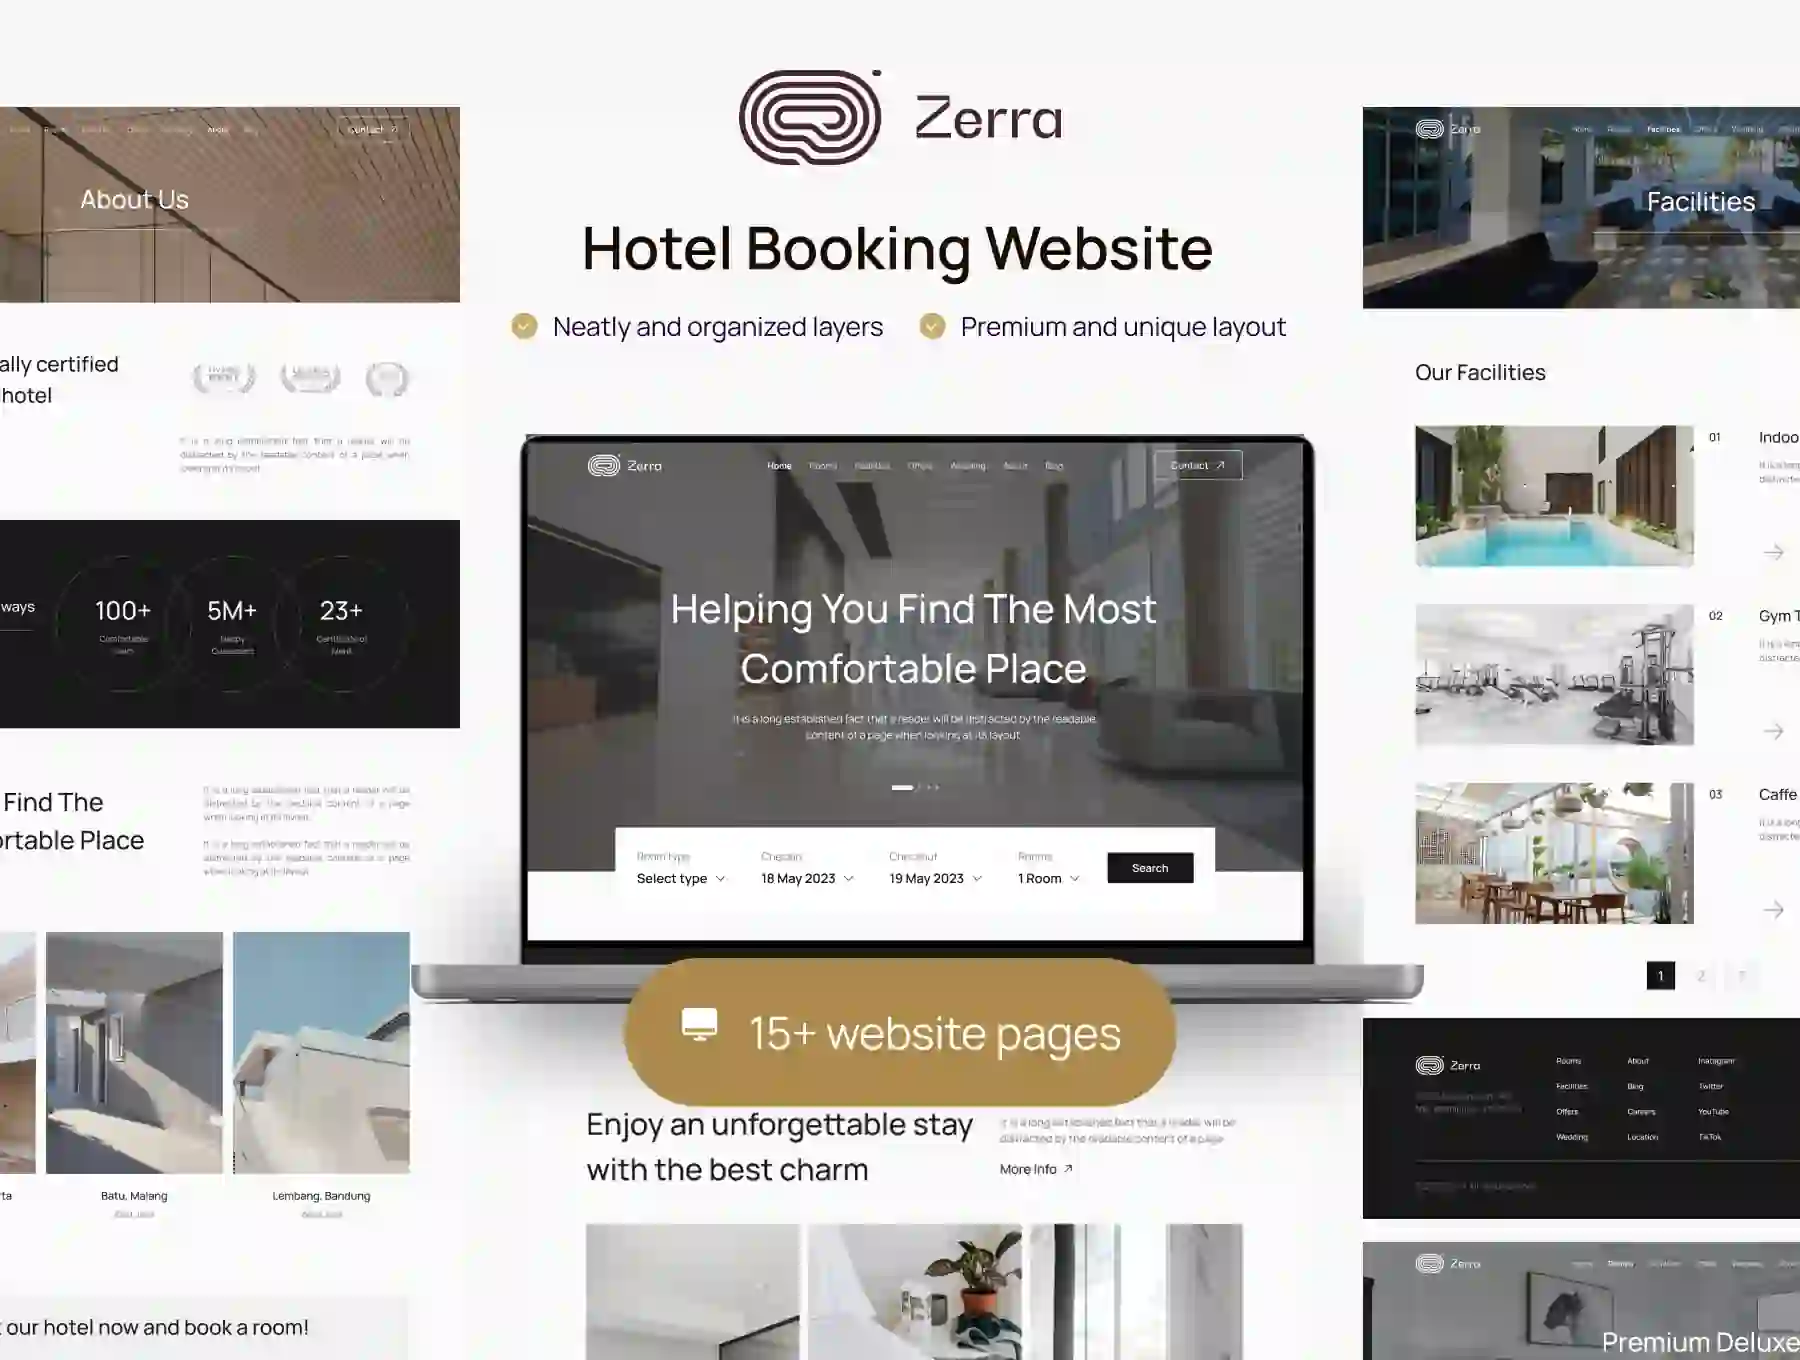 Zerra - Hotel Booking Website